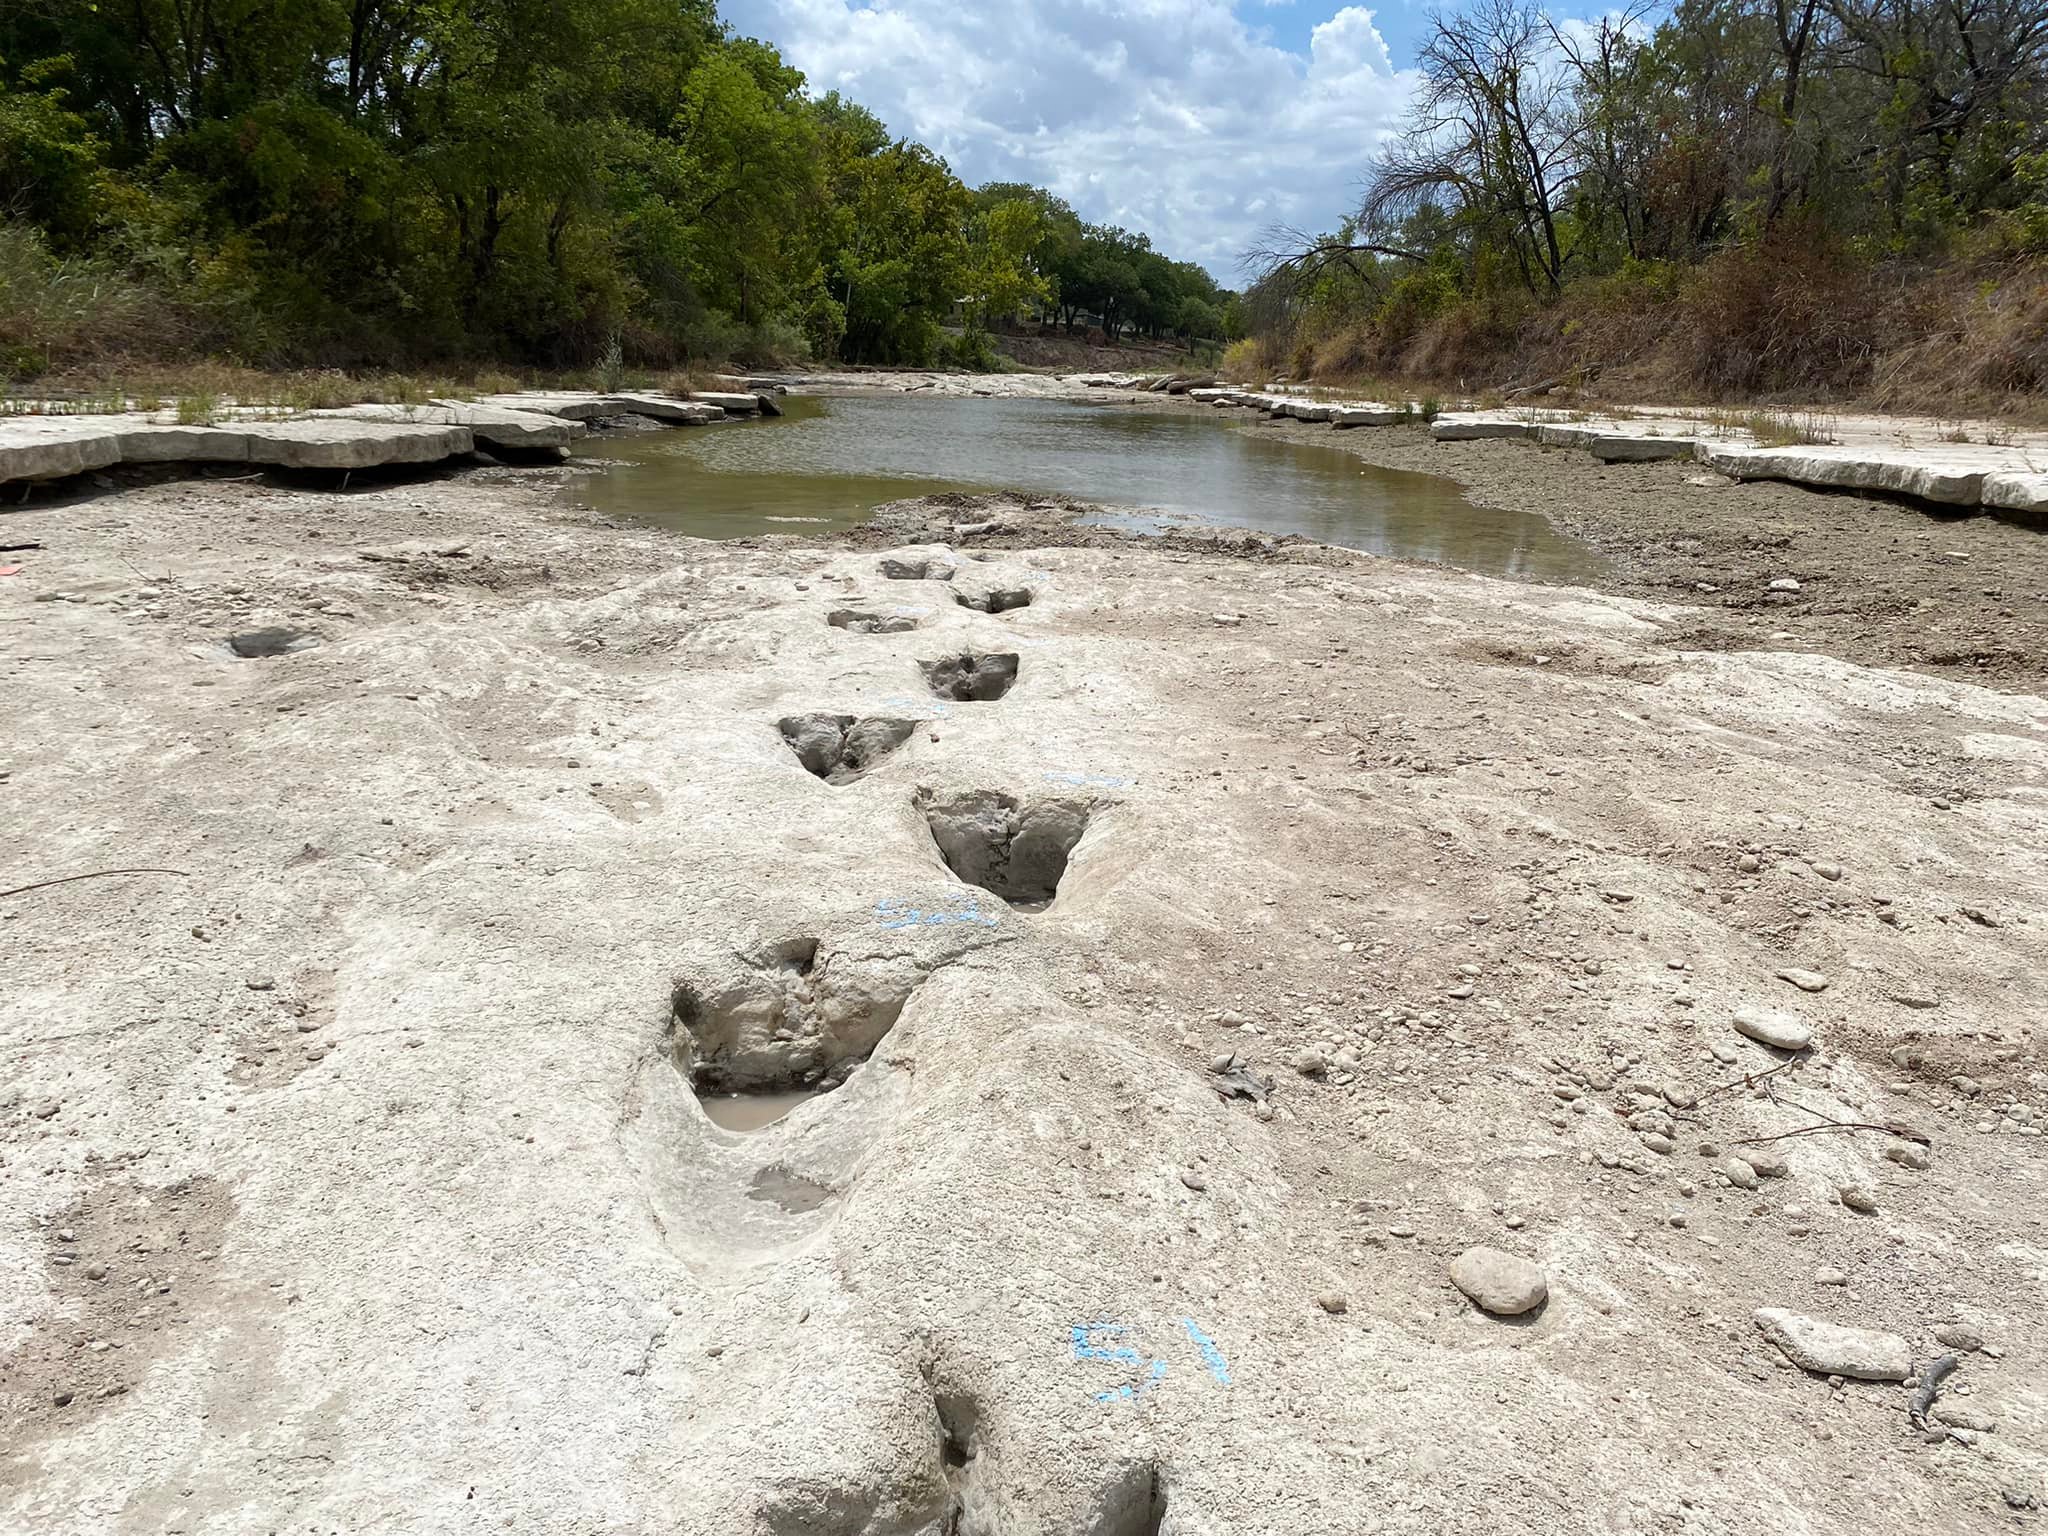 Huellas de dinosaurio descubiertas en el río Paluxy en Texas.